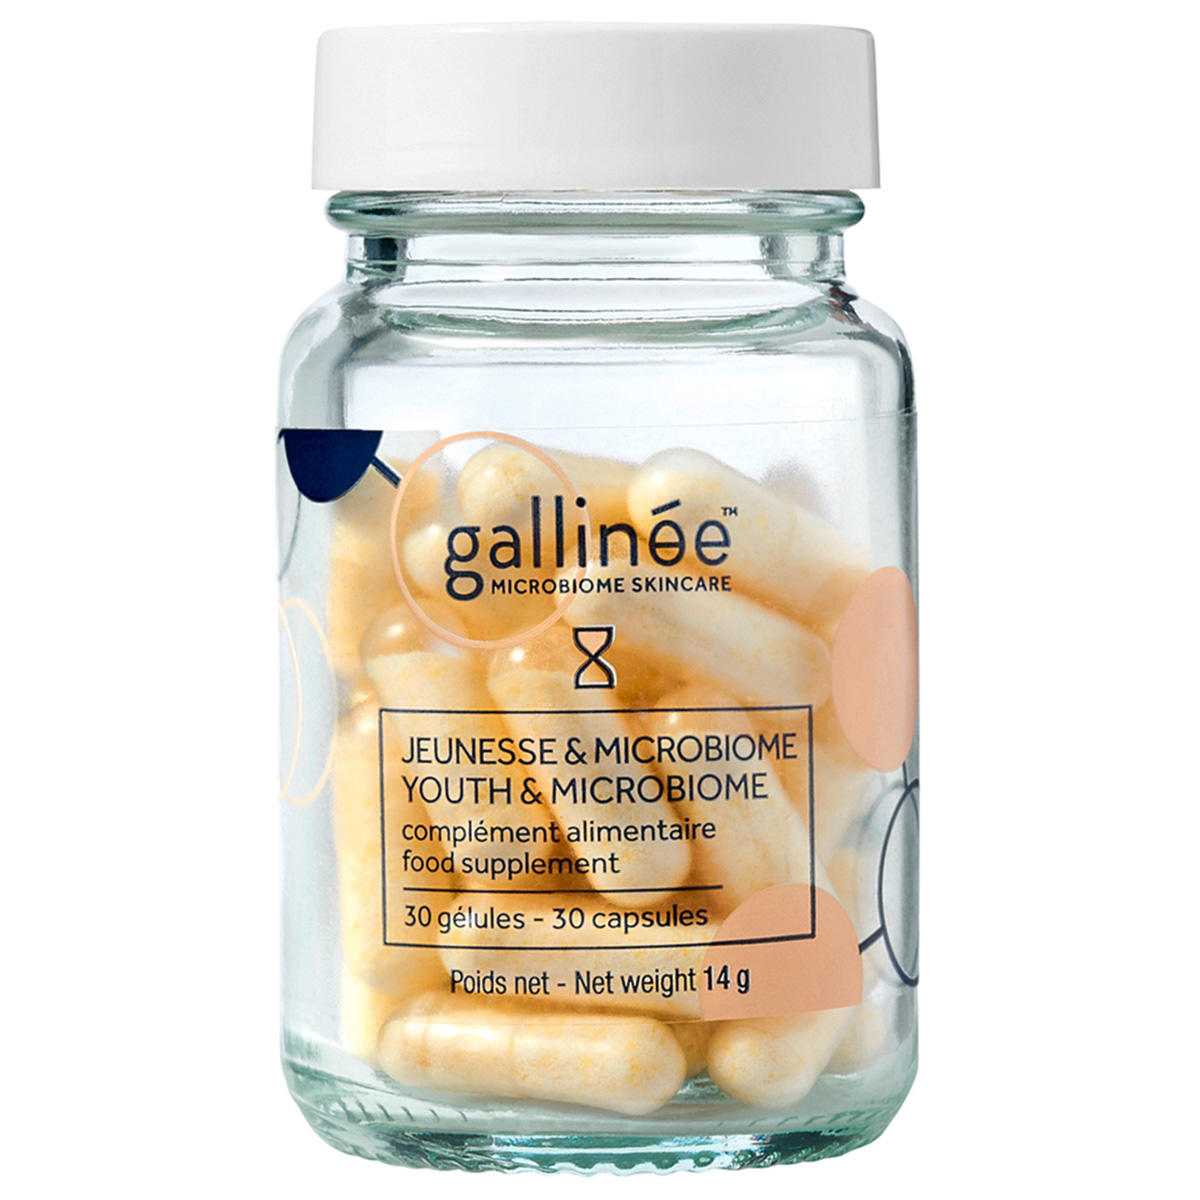 Gallinée Jeunesse & Microbiome complément alimentaire Dose 30 Kapseln - 1